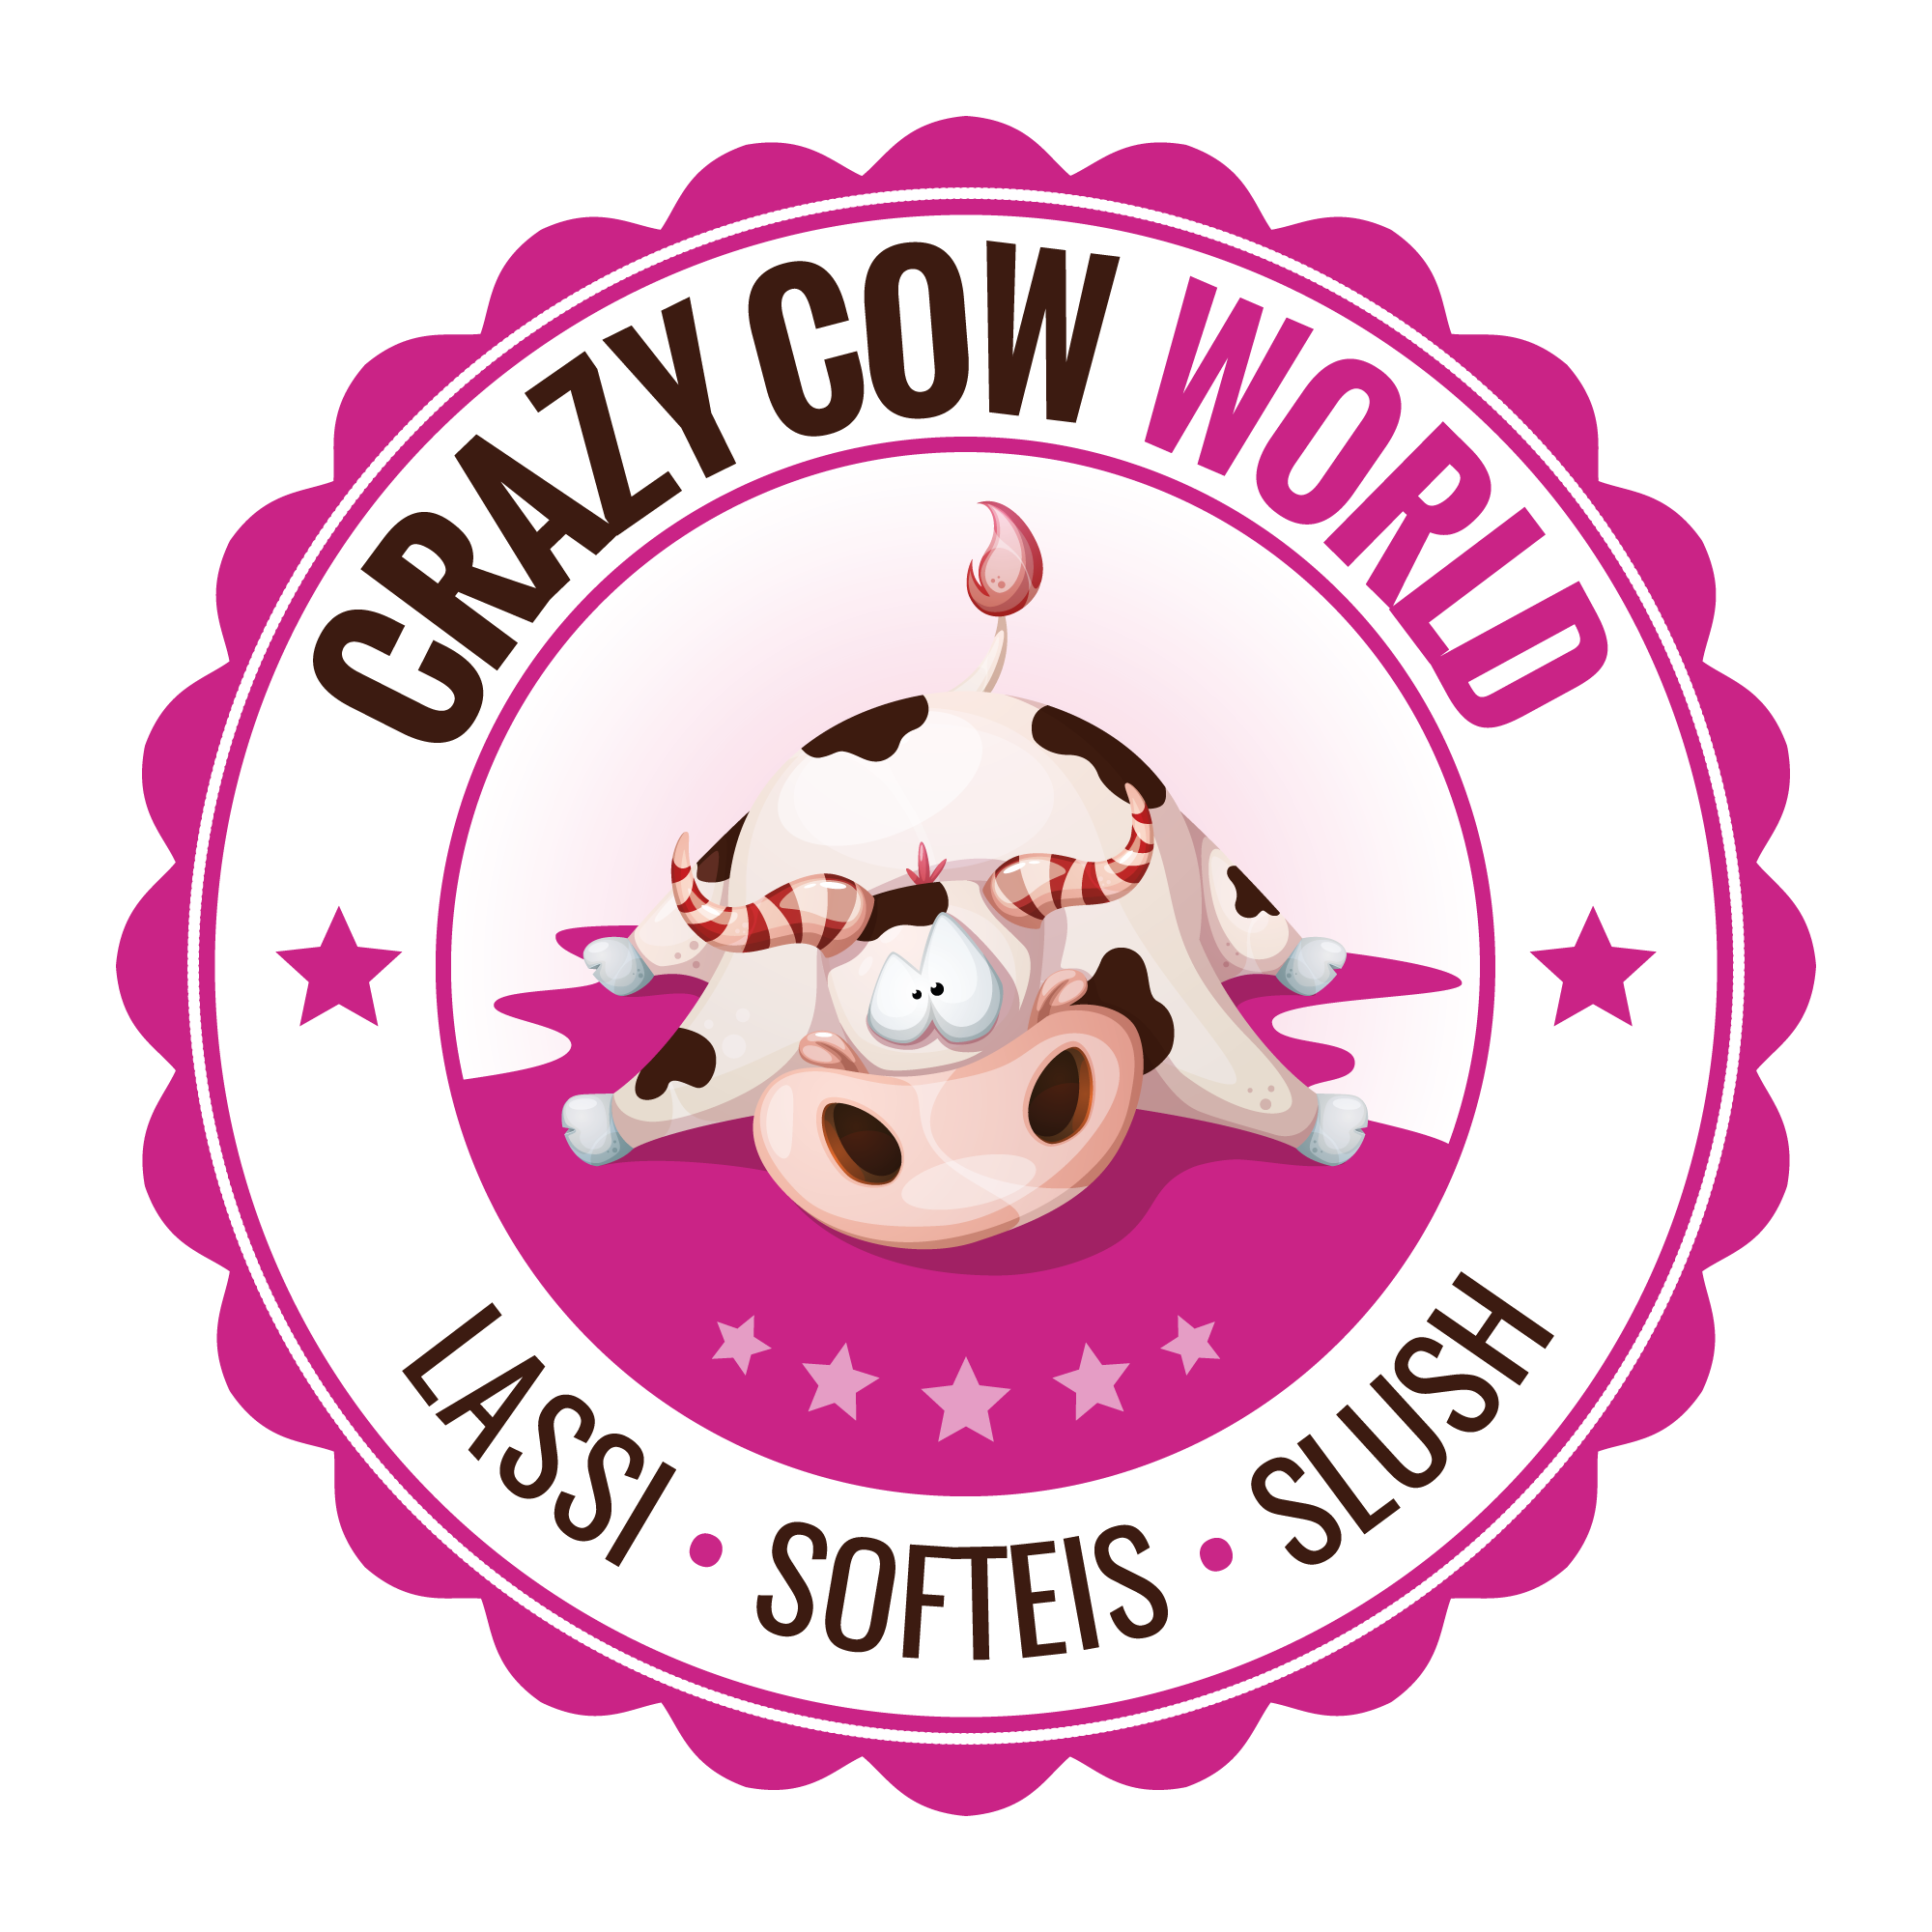 Softeis Zwickau - Crazy Cow World